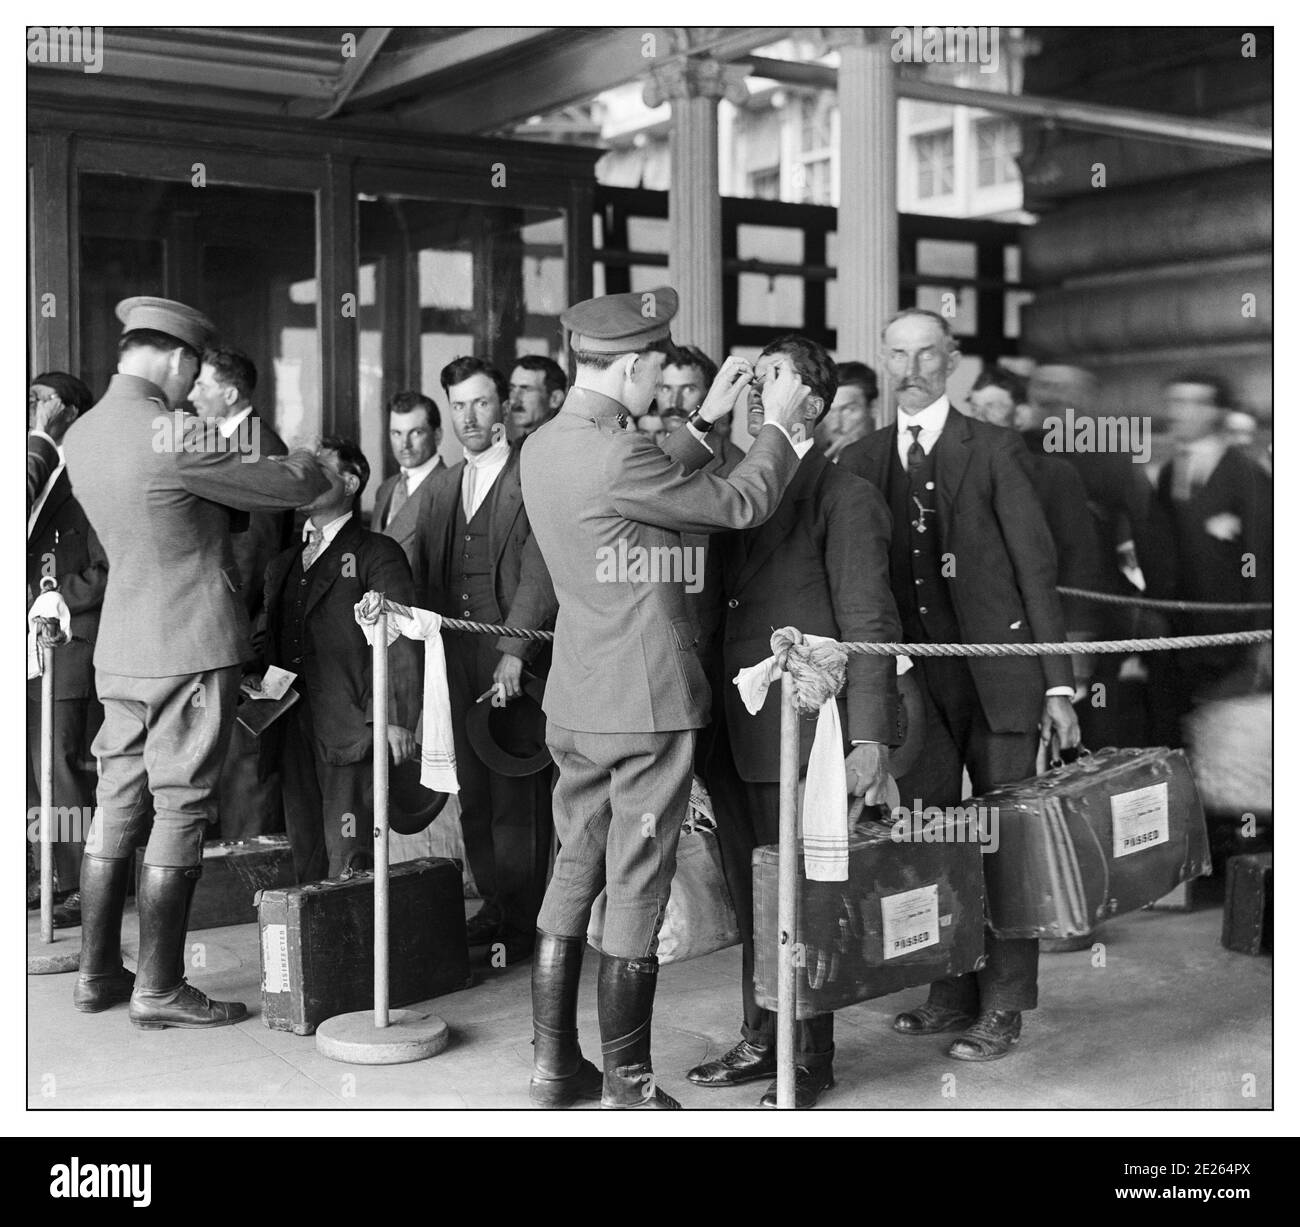 ELLIS ISLAND Vintage 1900 USA IMMIGRATION “Health Inspection of New Immigrants, Ellis Island, USA 1914 nach einer mühsamen Seereise, Immigranten, die auf Ellis Island ankommen, wurden mit Informationen aus ihrem Schiffsregister markiert; Sie warteten dann auf langen Warteschlangen für medizinische und rechtliche Inspektionen, um festzustellen, ob sie für die Einreise in die Vereinigten Staaten geeignet waren. Von 1900 bis 1914 – den Spitzenjahren des Ellis Island-Betriebs – kamen täglich durchschnittlich 1,900 Menschen durch die Einwanderungsstation. Stockfoto